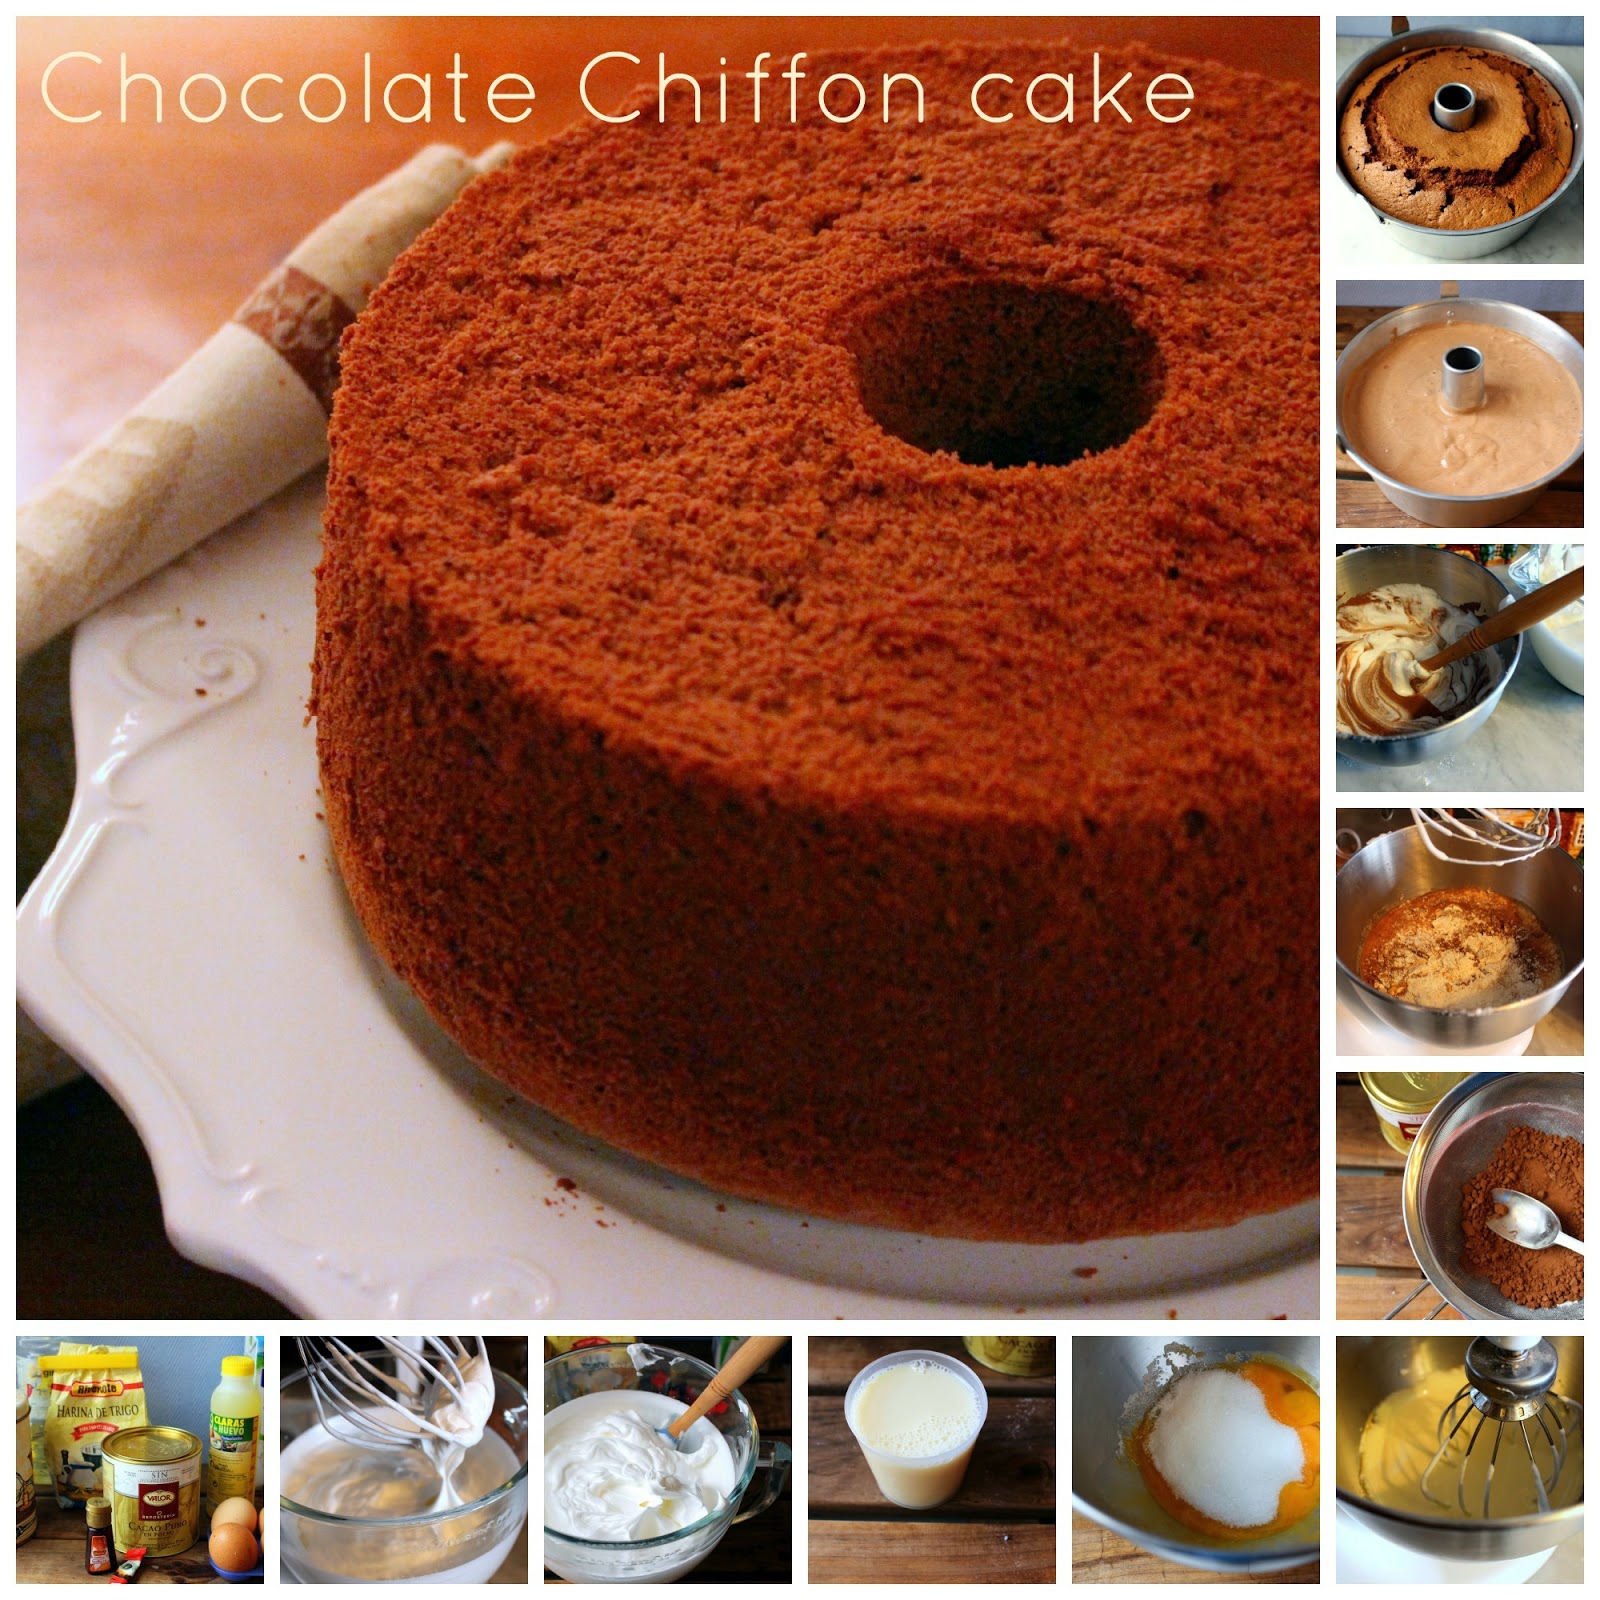 Chocolate Chiffon cake (Bizcocho 